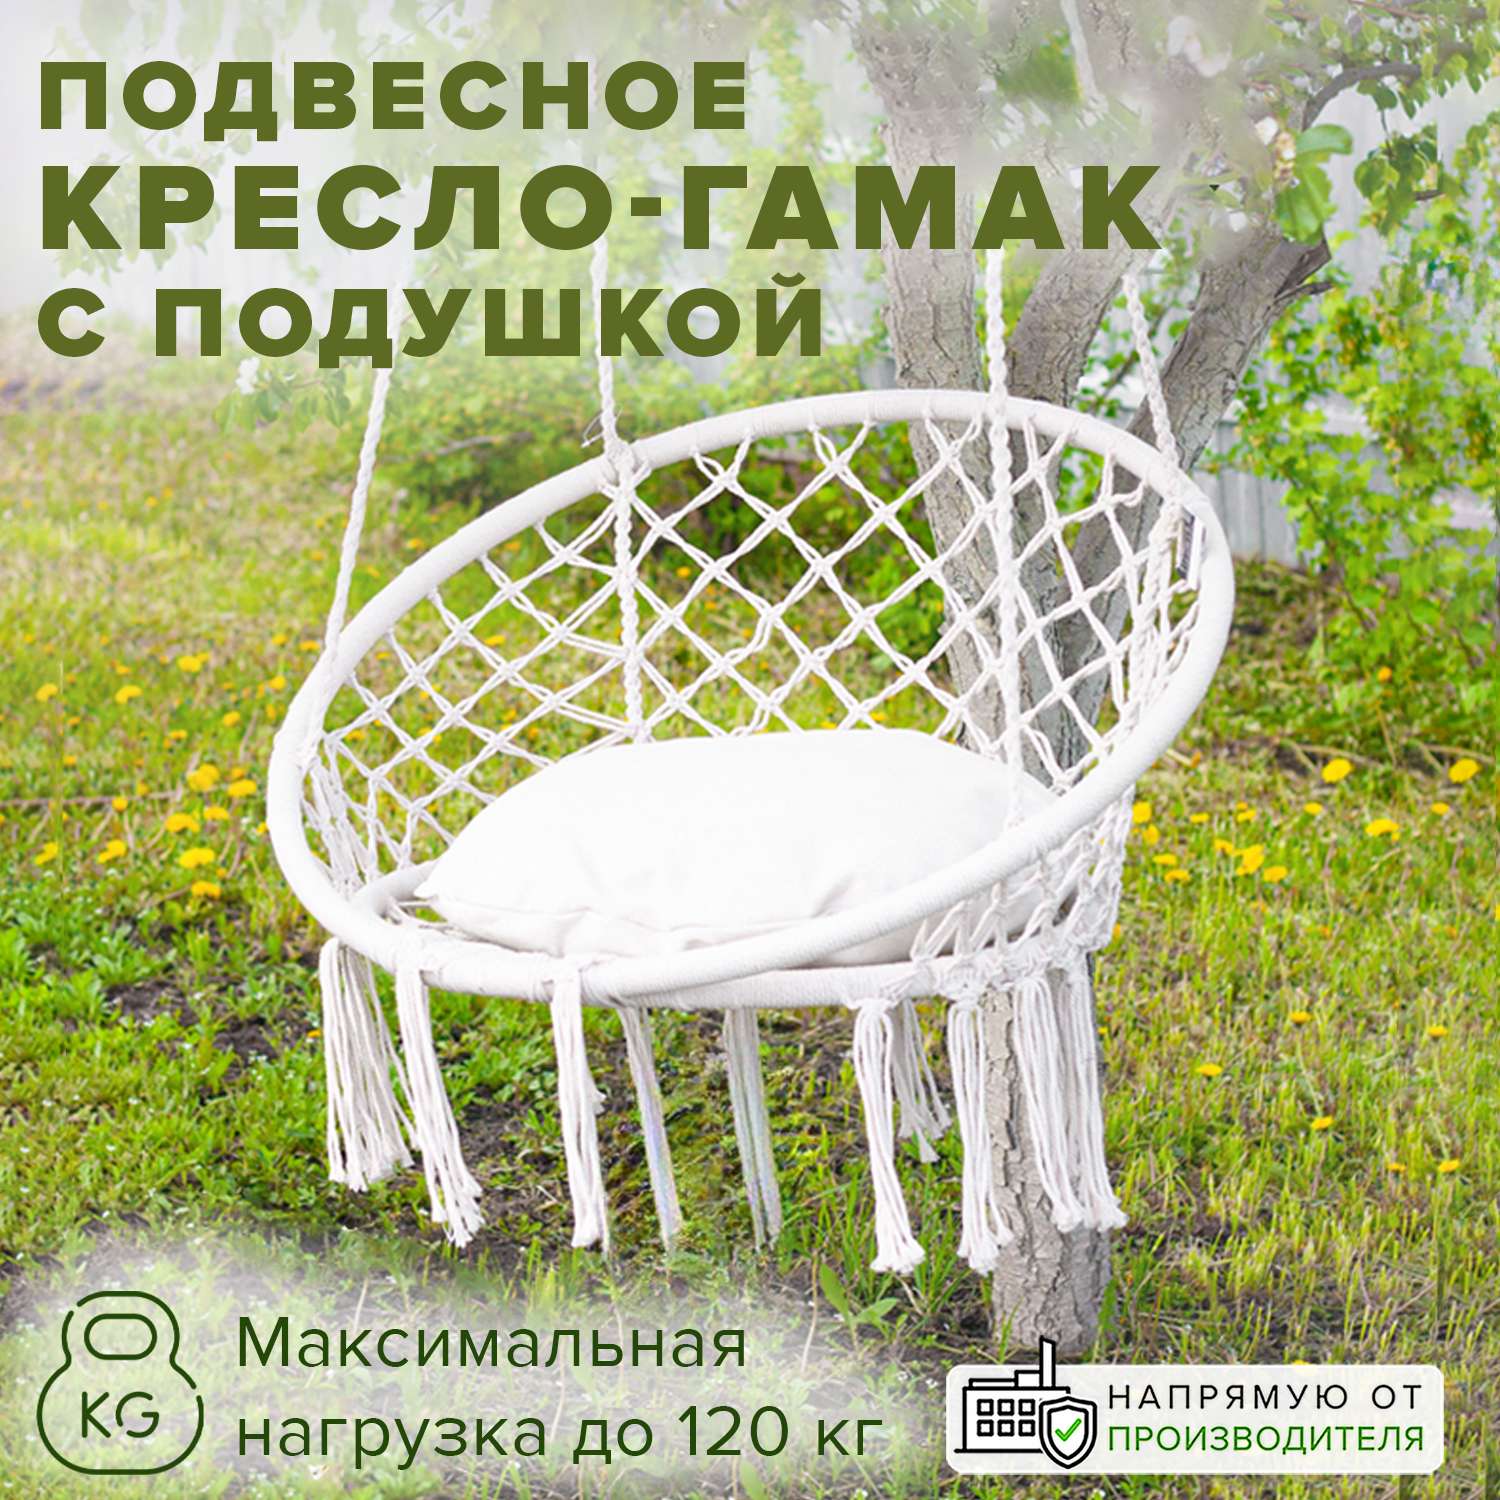 Кресло Good Sale подвесное с подушкой диаметр 80 см - фото 1